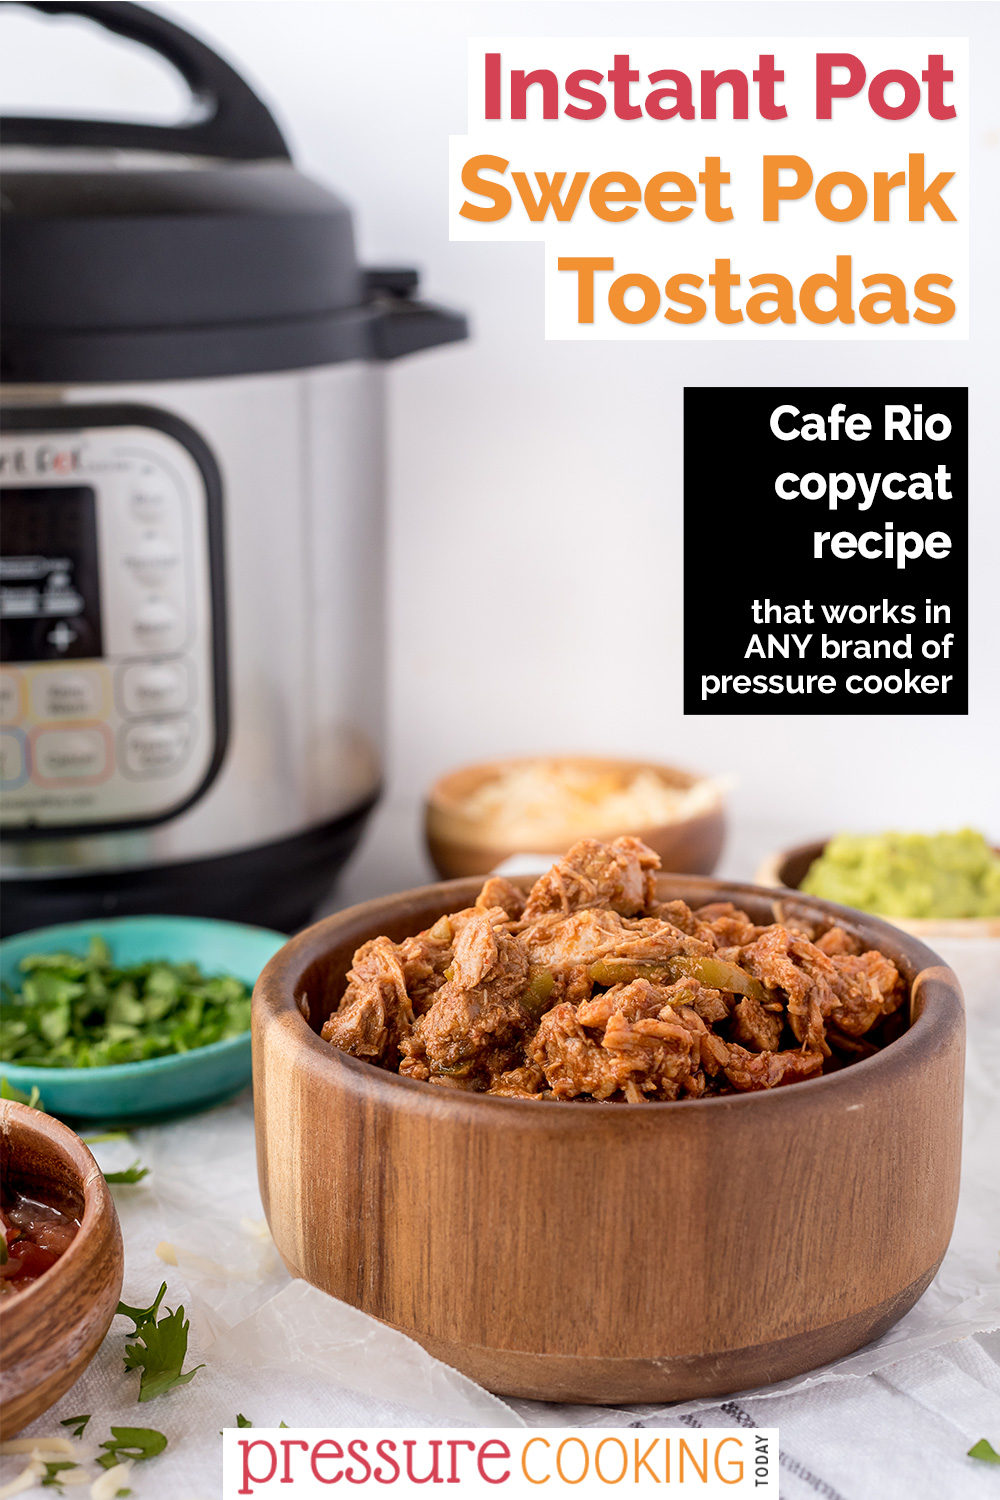 You can use this copycat Café Rio sweet pork recipe to make amazing tostadas, burritos, or salads in your Instant Pot. #pressurecookingtoday via @PressureCook2da